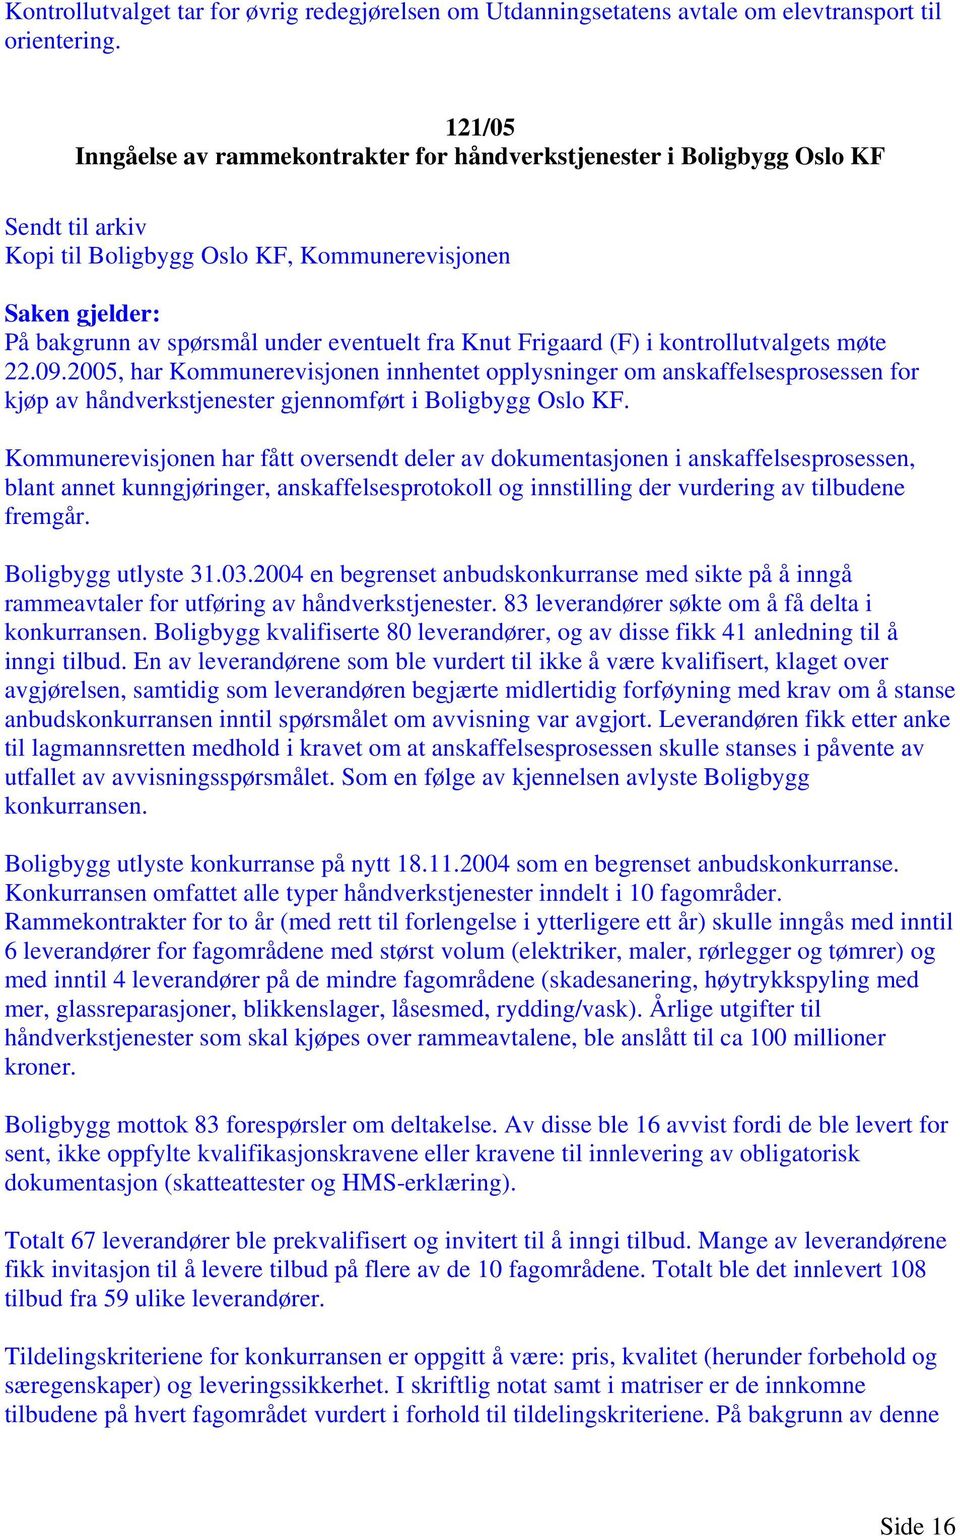 Knut Frigaard (F) i kontrollutvalgets møte 22.09.2005, har Kommunerevisjonen innhentet opplysninger om anskaffelsesprosessen for kjøp av håndverkstjenester gjennomført i Boligbygg Oslo KF.